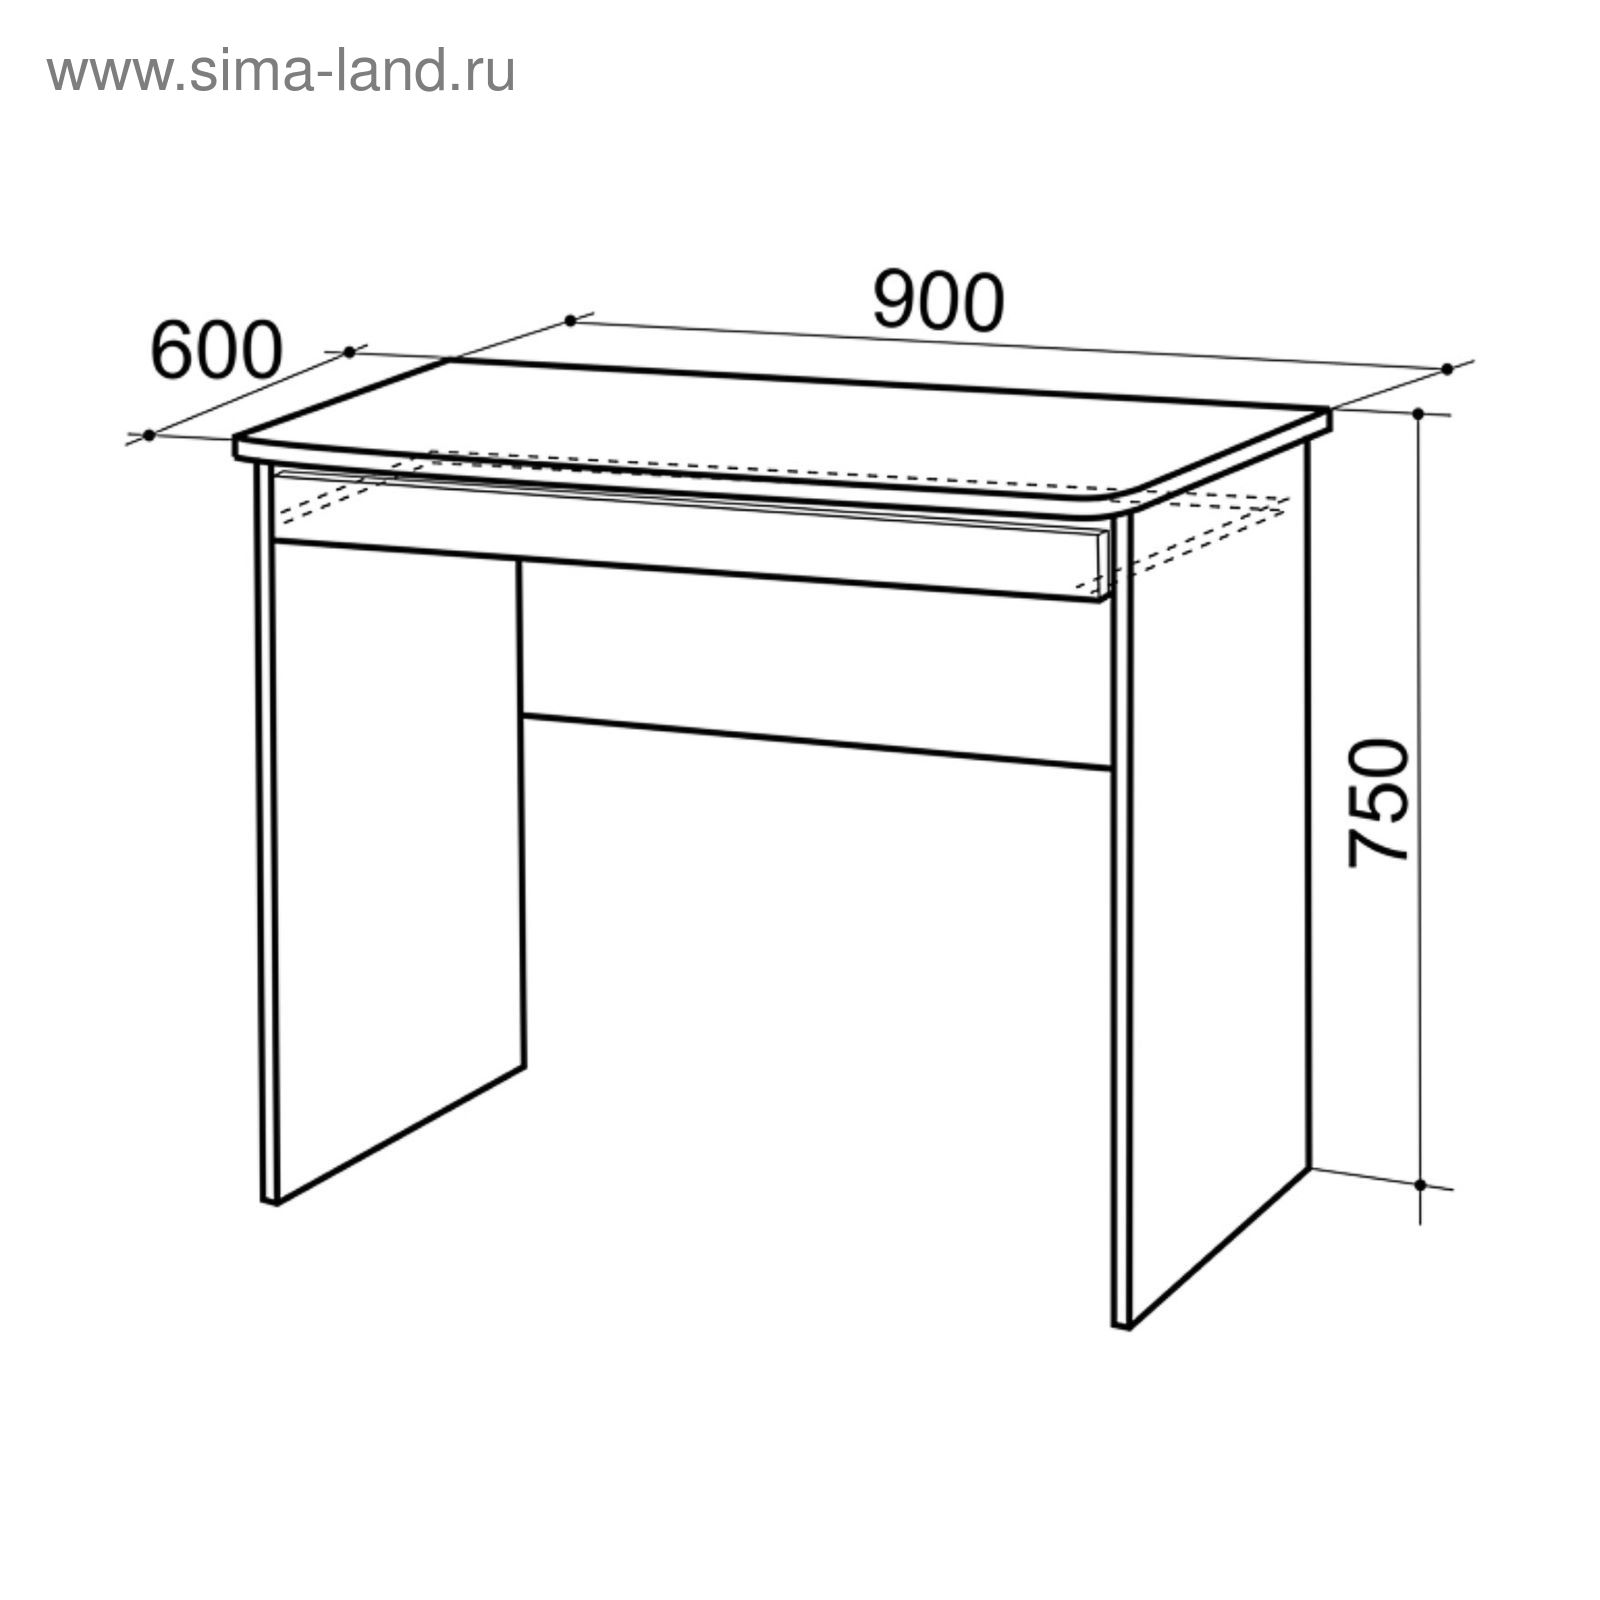 Размеры столешницы компьютерного стола